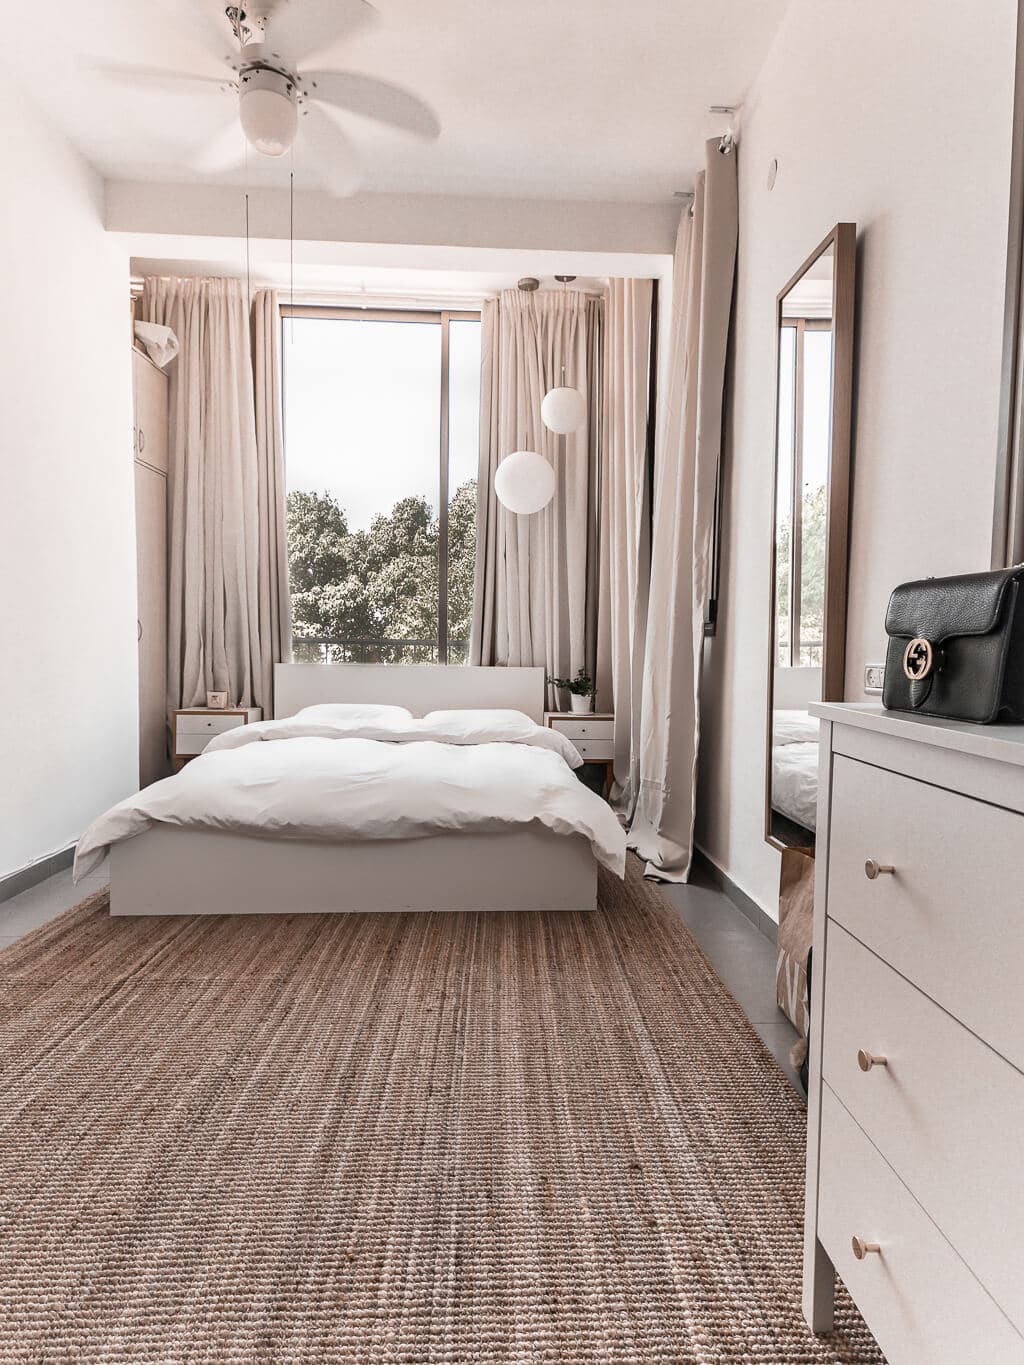 סיור בחדר השינה שלי - עיצוב אקלקטי סקנדינבי, ג׳ונגל אורבני | Hedonistit bedroom tour - eclectic nordic urban jungle home styling